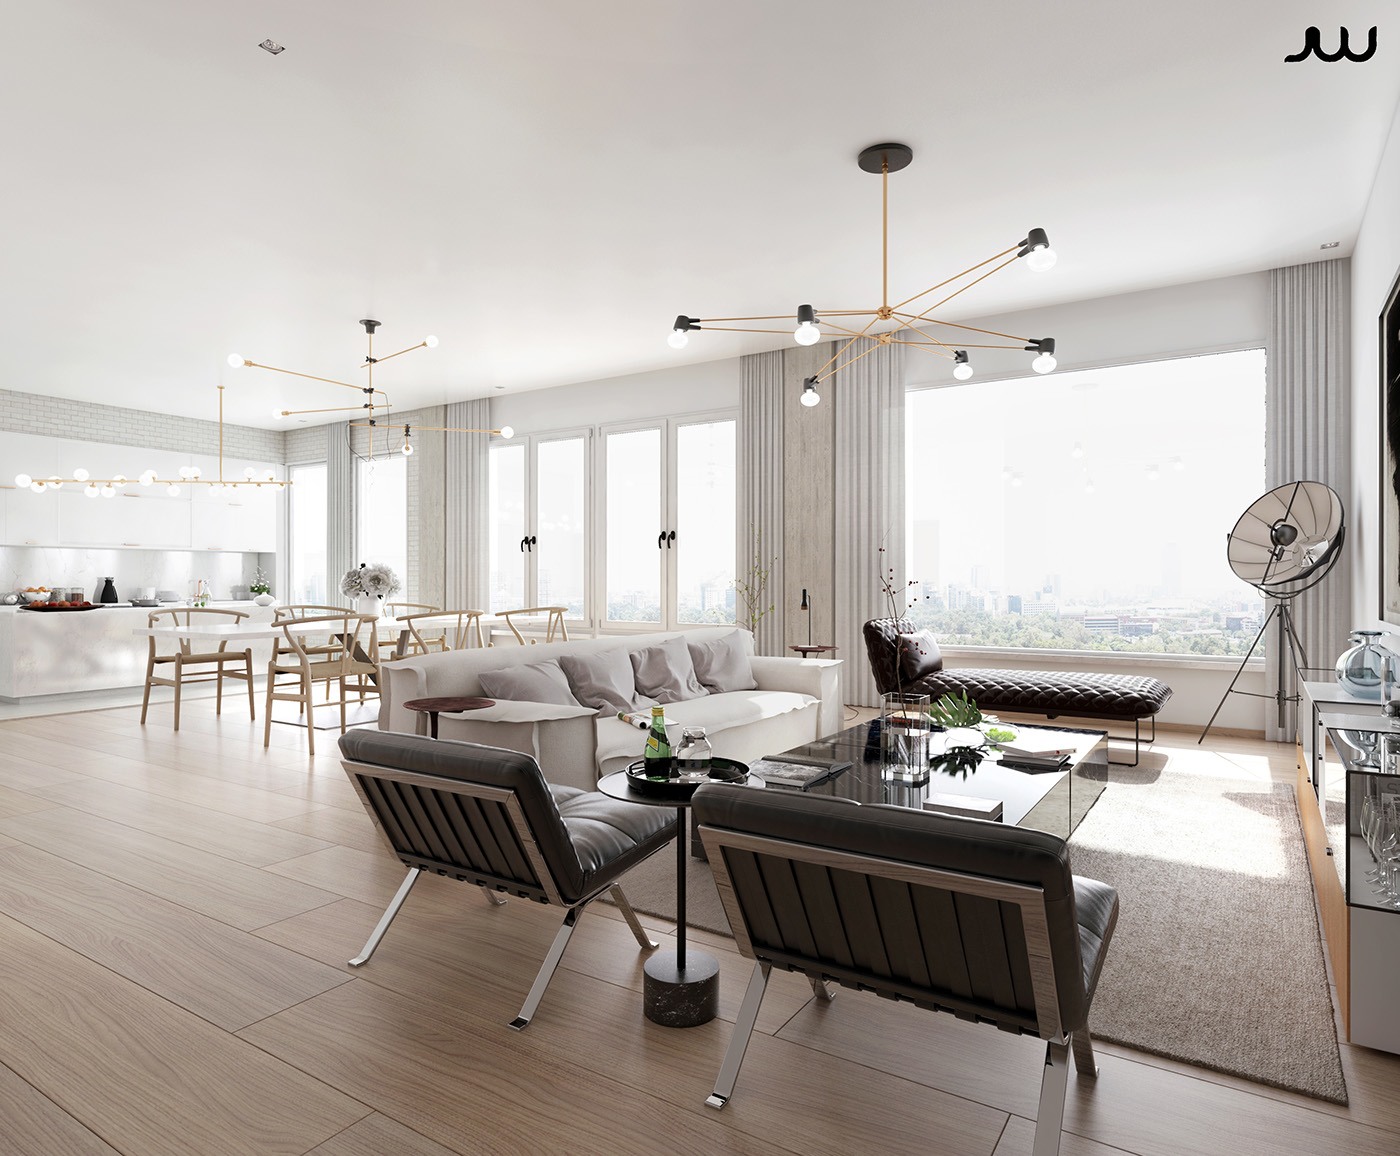 Luxurious living room interior design ideas